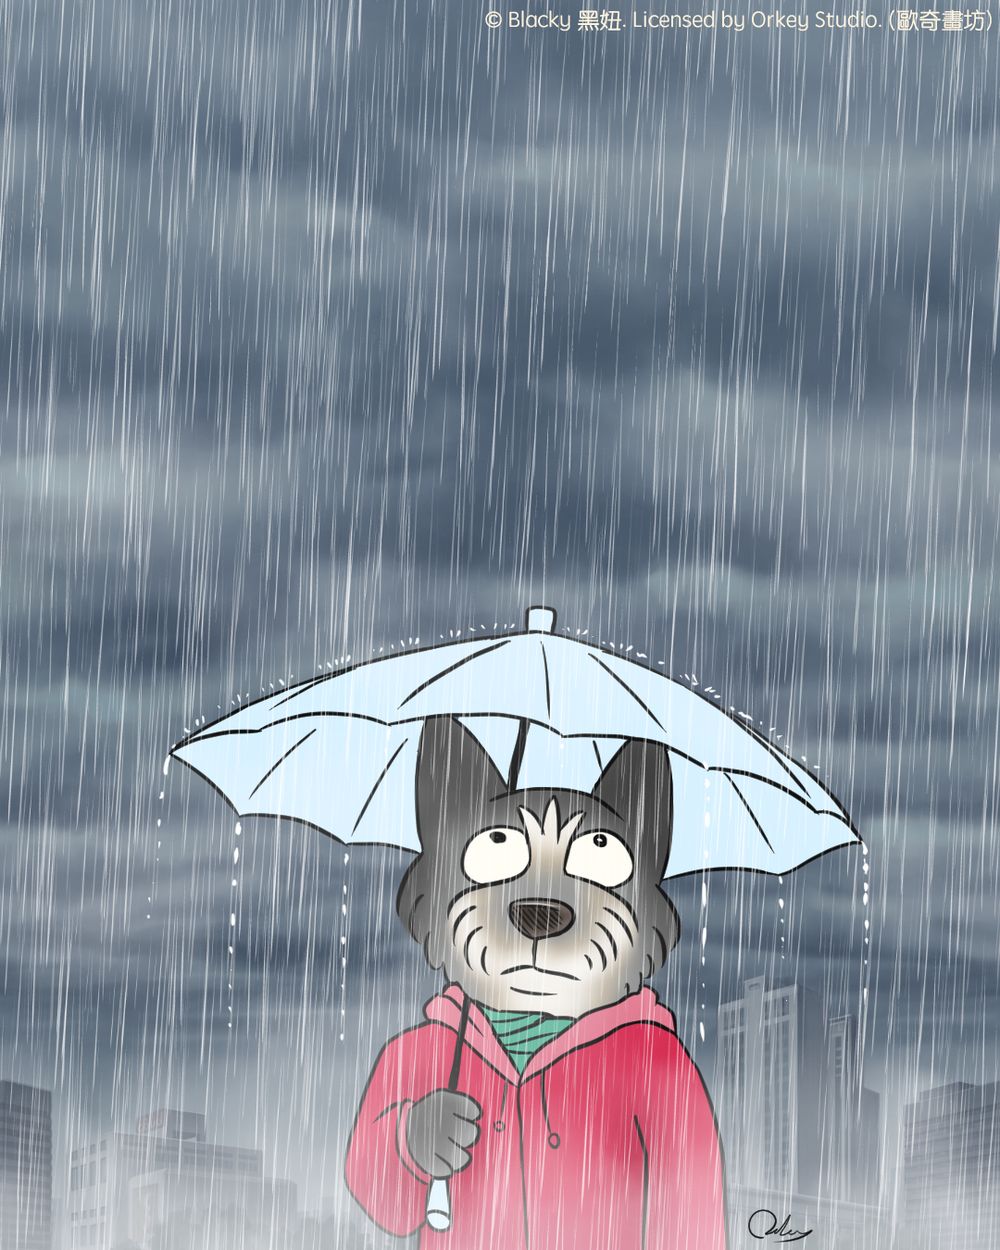 台北已經下雨好幾天了 別再下雨啦 Orkey7913的創作 巴哈姆特